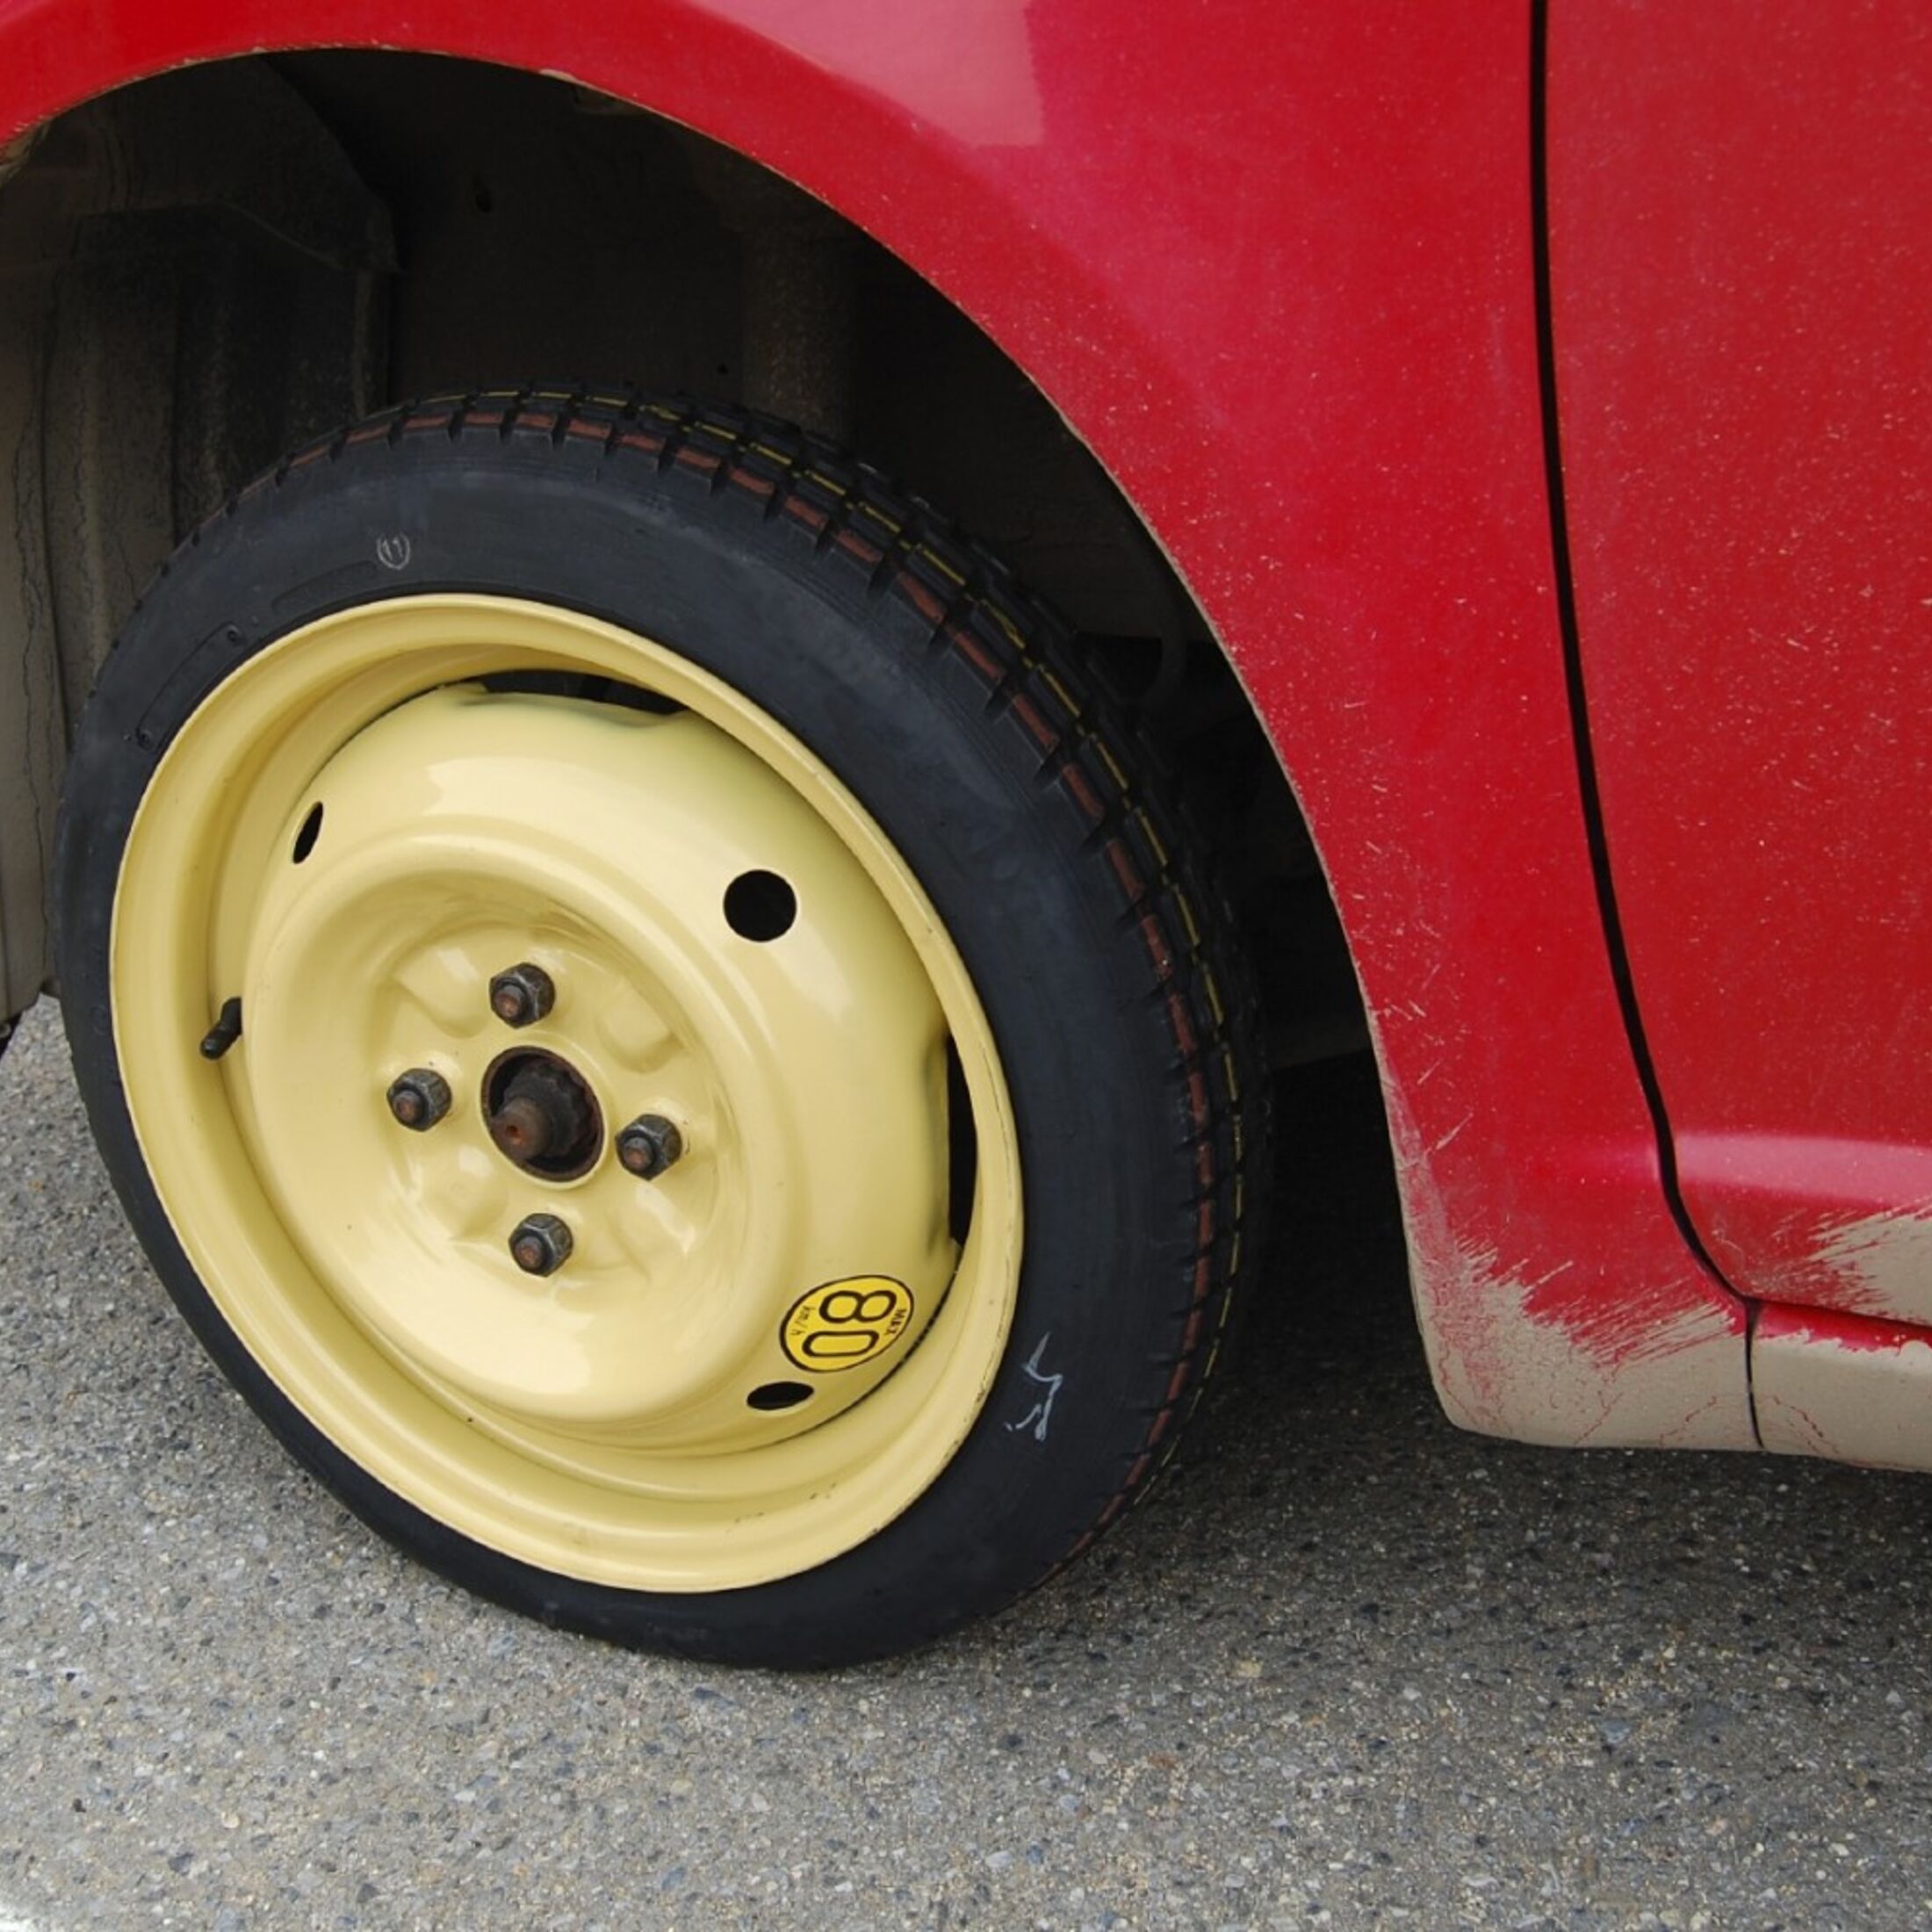 Tipps und Tricks zum Thema Reifenpanne und Notrad